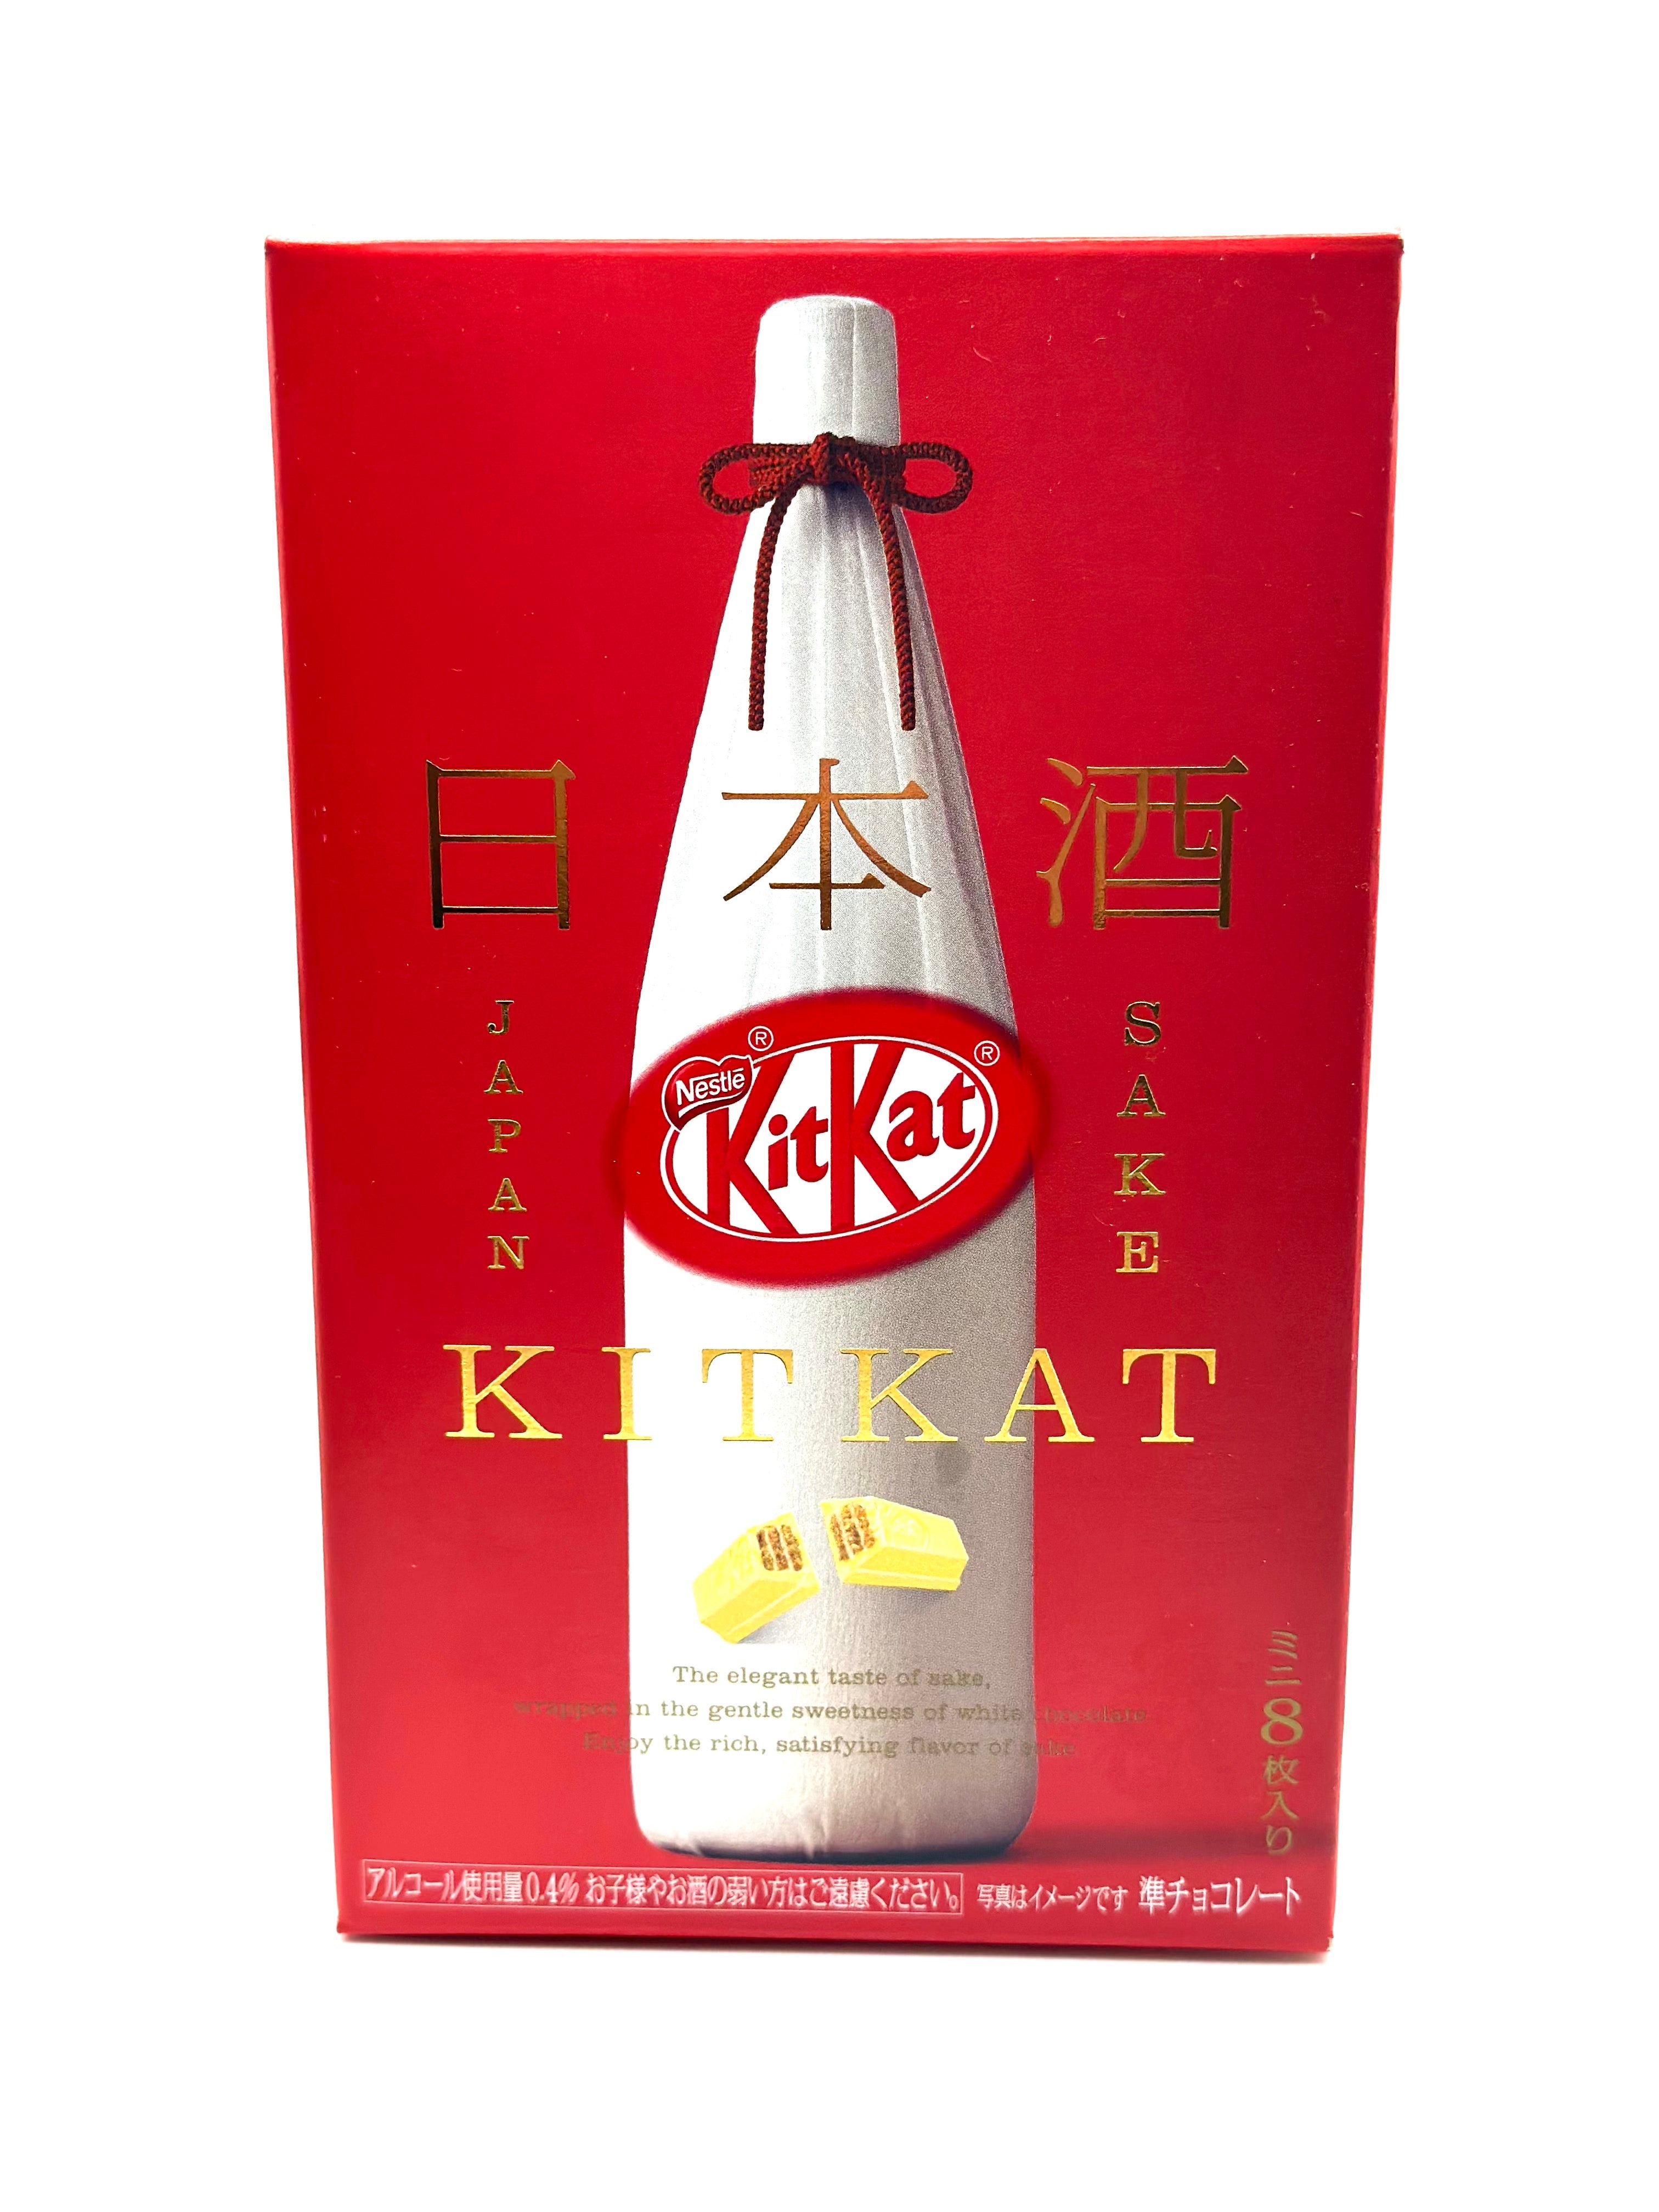 Japan Exklusiv Original Kit Kat Sake Masuizumi